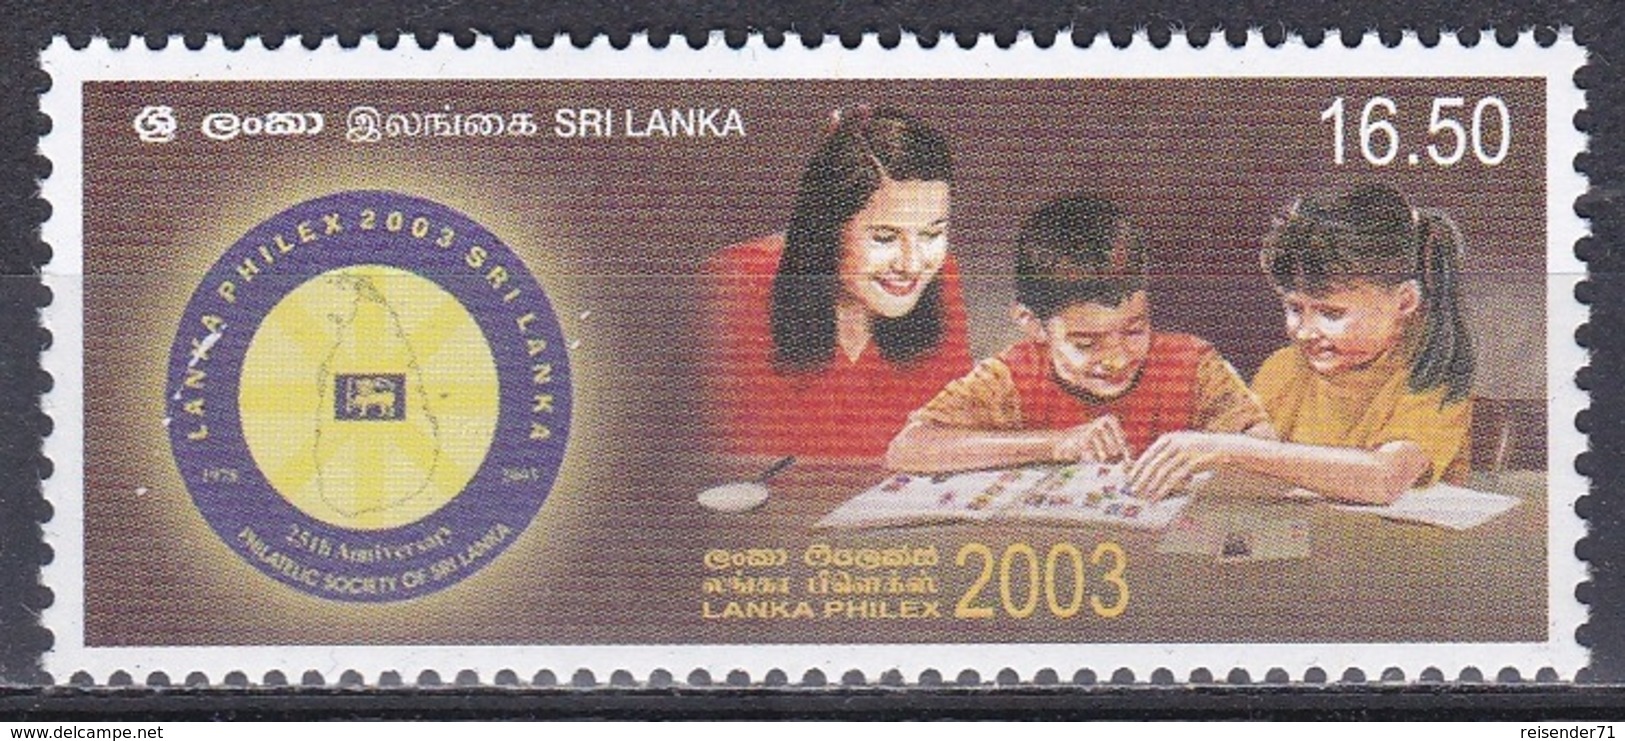 Sri Lanka 2003 Philatelie Philately Briefmarkenausstellung Stamp Exhibition LANKAPHILEX KInder Children, Mi. 1403 ** - Sri Lanka (Ceylon) (1948-...)